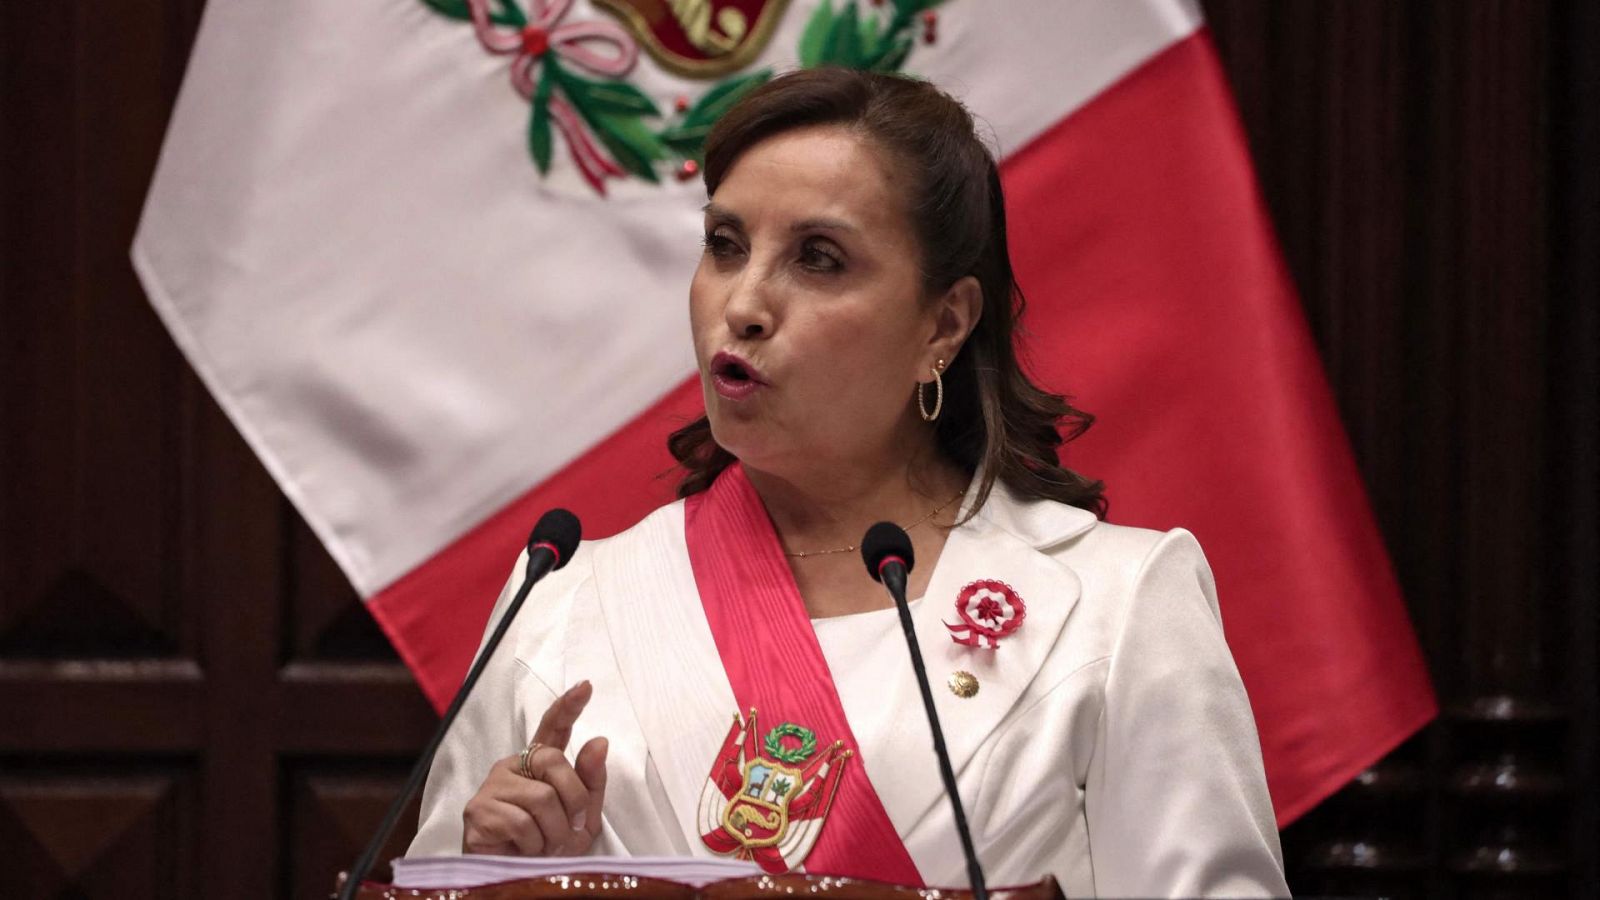 La presidenta de Perú, Dina Boluarte, en una imagen de archivo